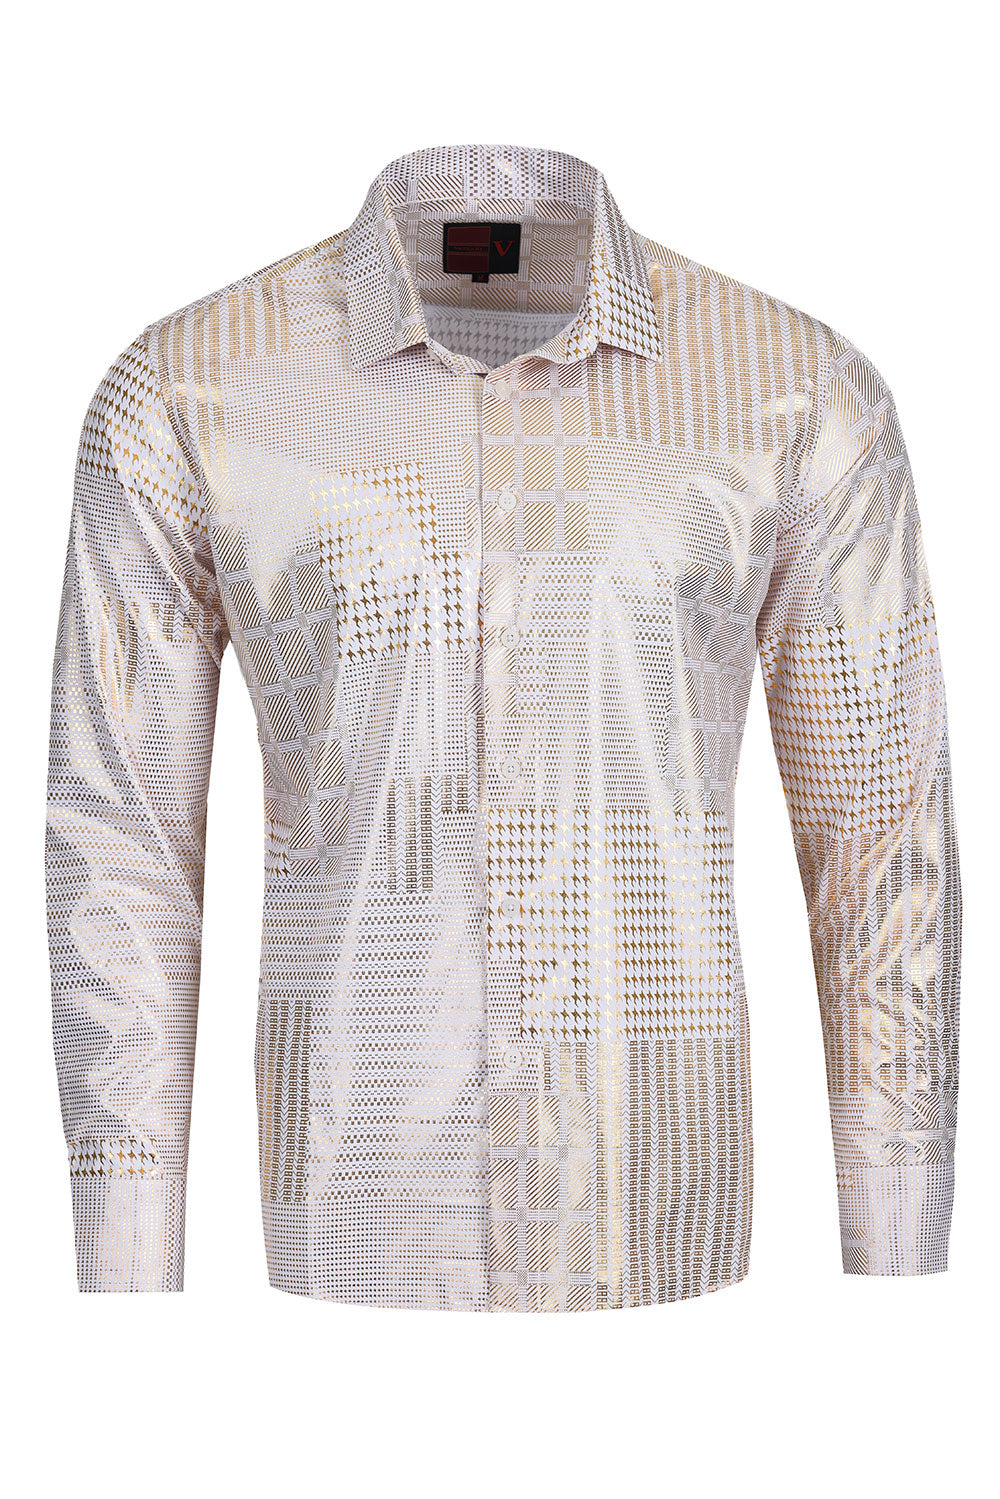 Vassari Mens Shiny Checkered Metallic Print Design Button Down Luxury Shirt  2VS152 White and Gold